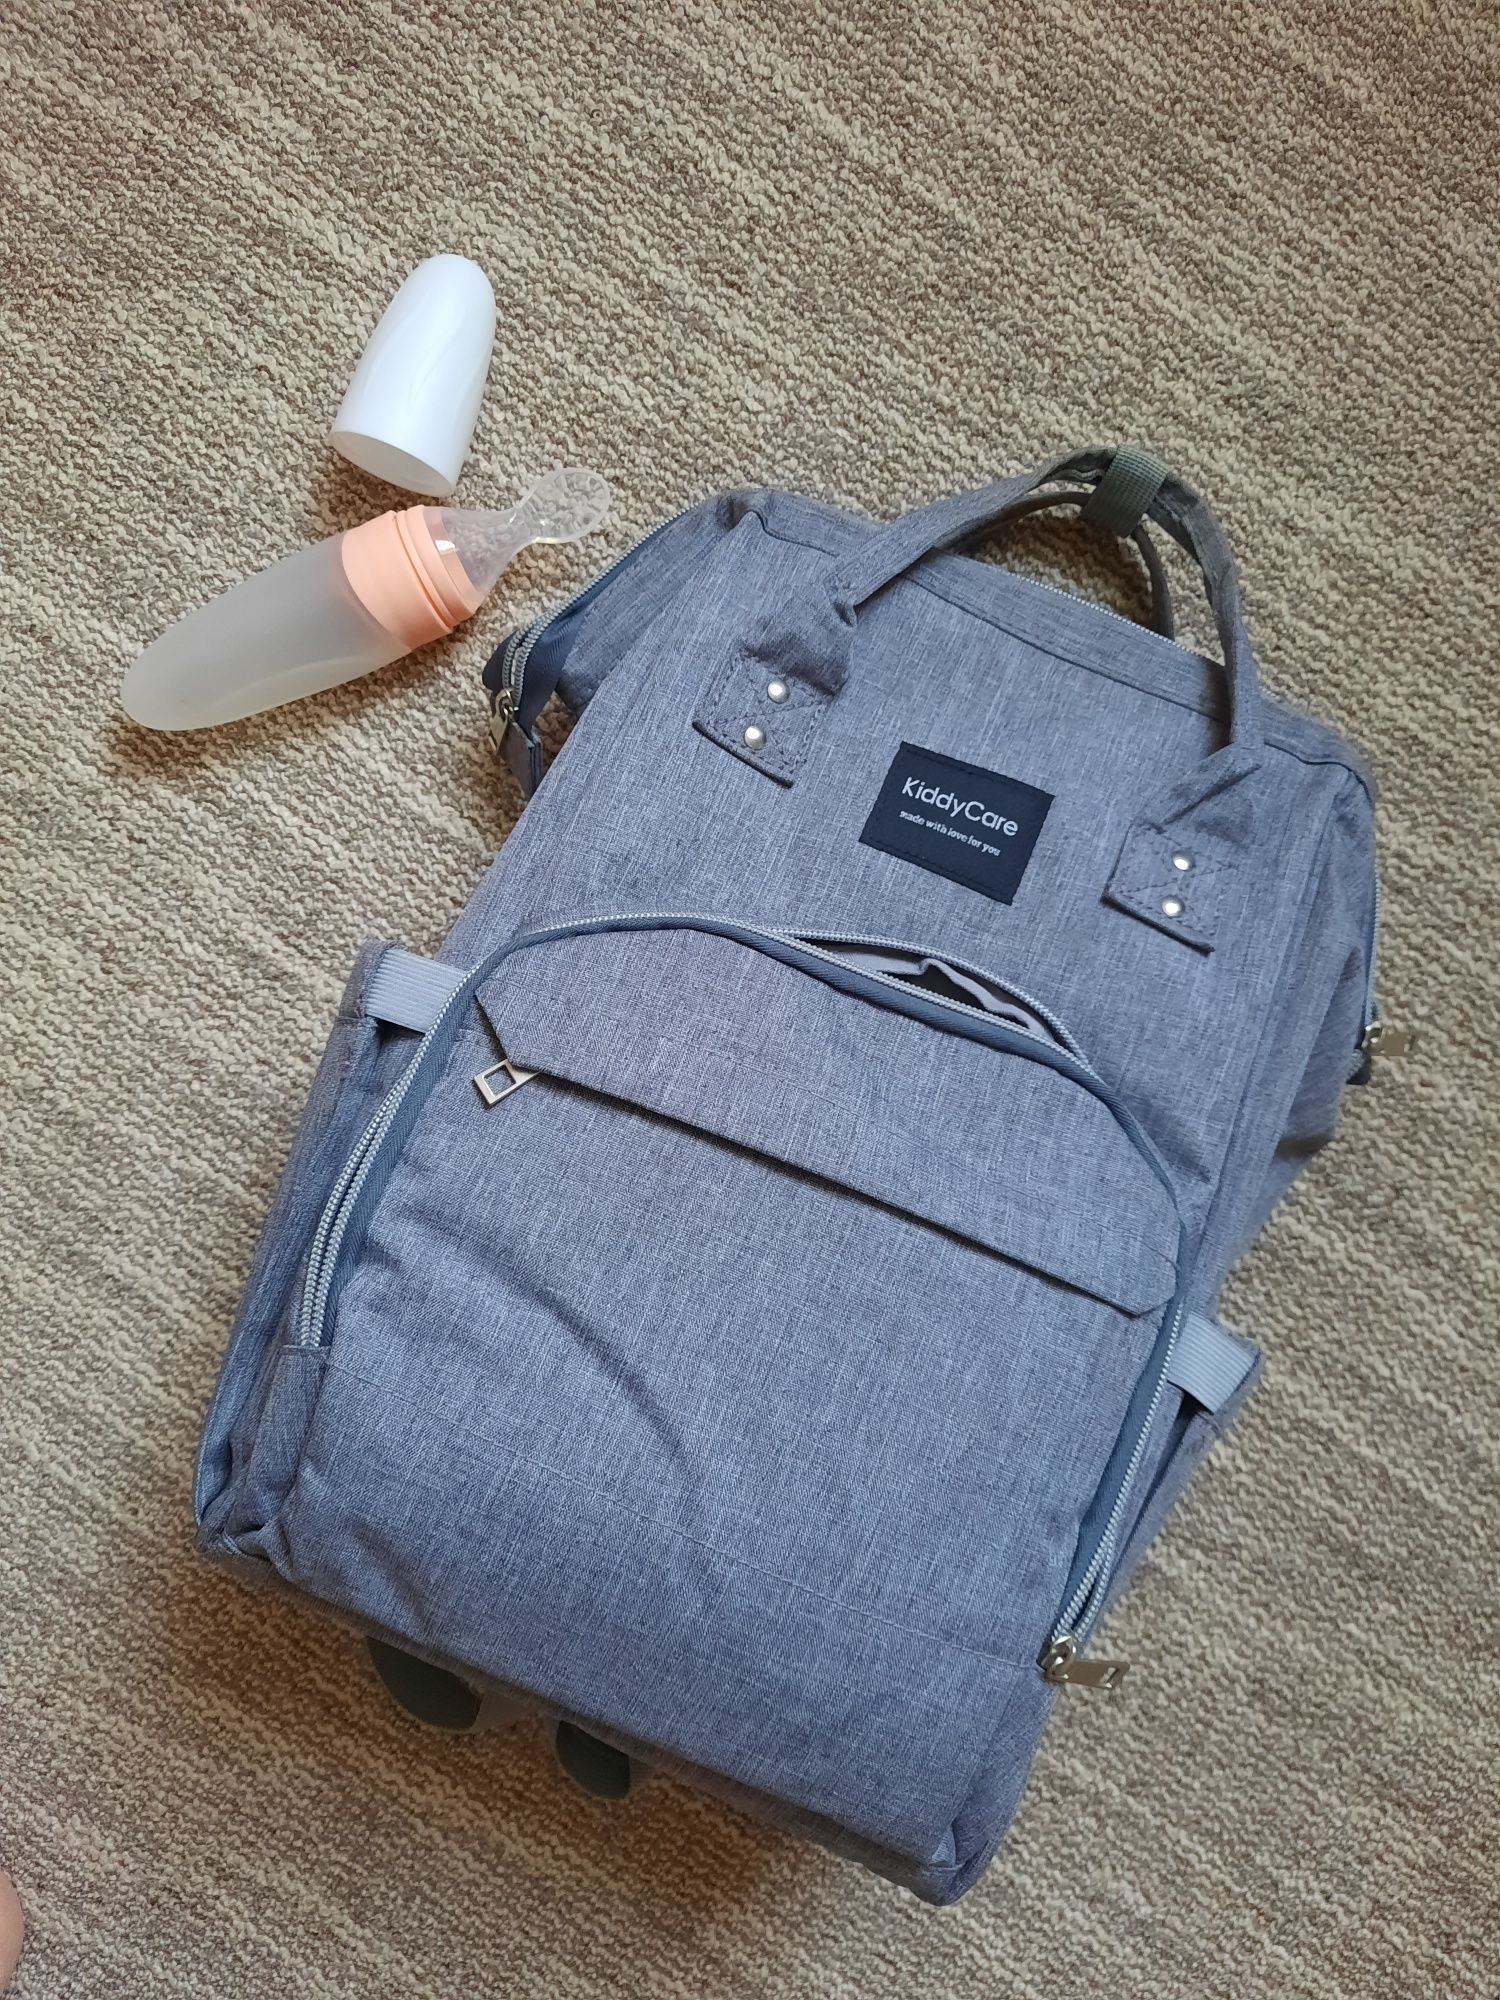 Рюкзак - сумка для мамы, силиконовая ложка - контейнер для прикорма